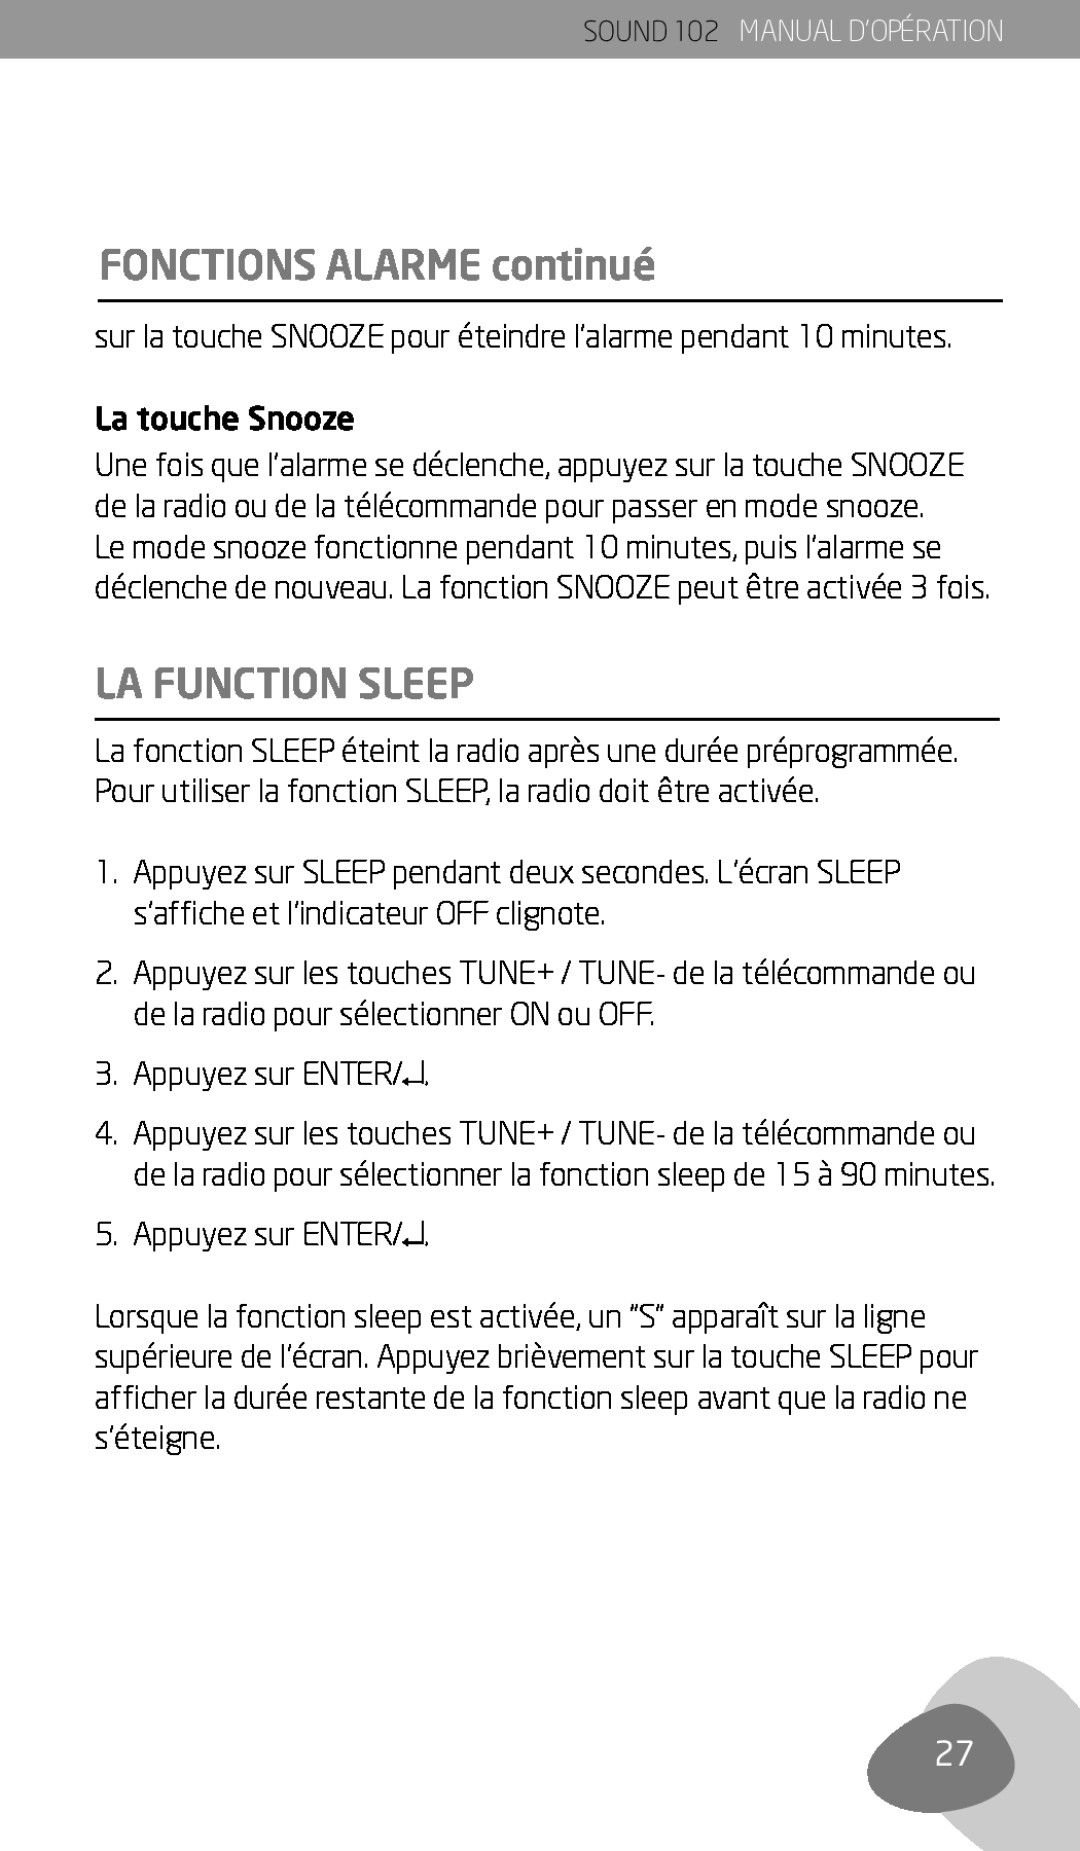 Eton 102 owner manual La Function Sleep, FONCTIONS ALARME continué, La touche Snooze, Appuyez sur ENTER 